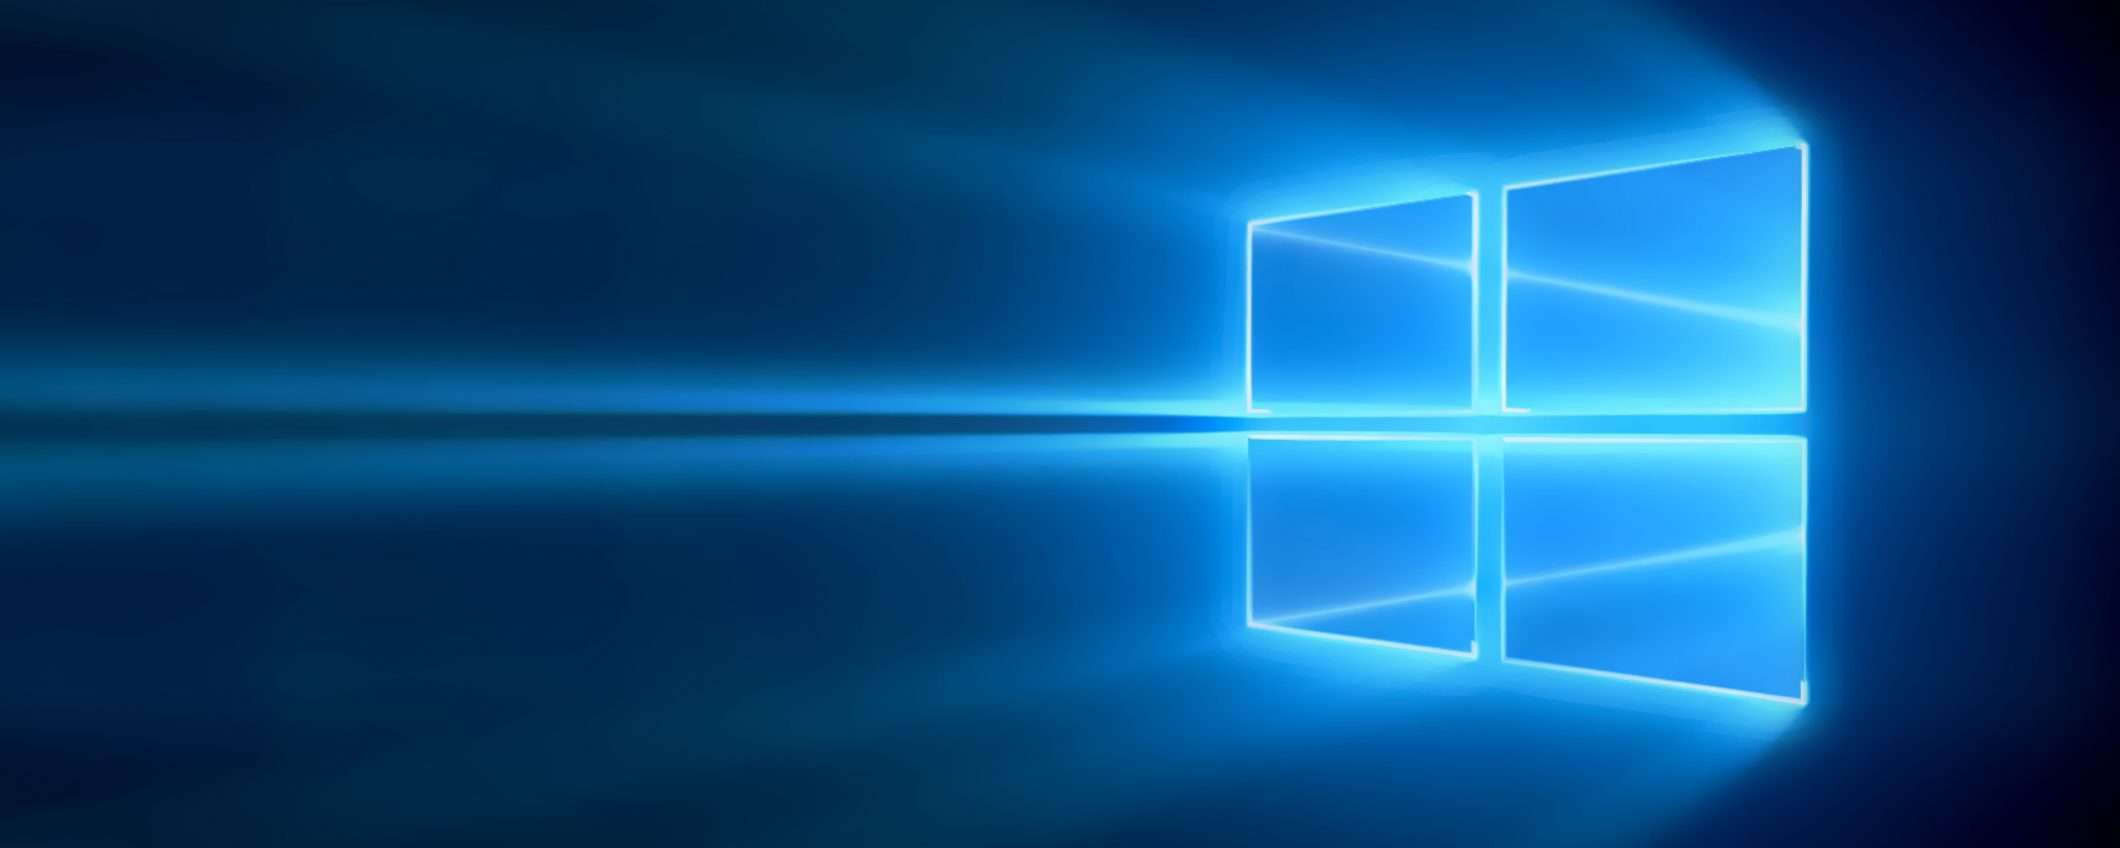 Windows10 e Office, licenza a vita a 10€ e 19€: sconti fino al 91%